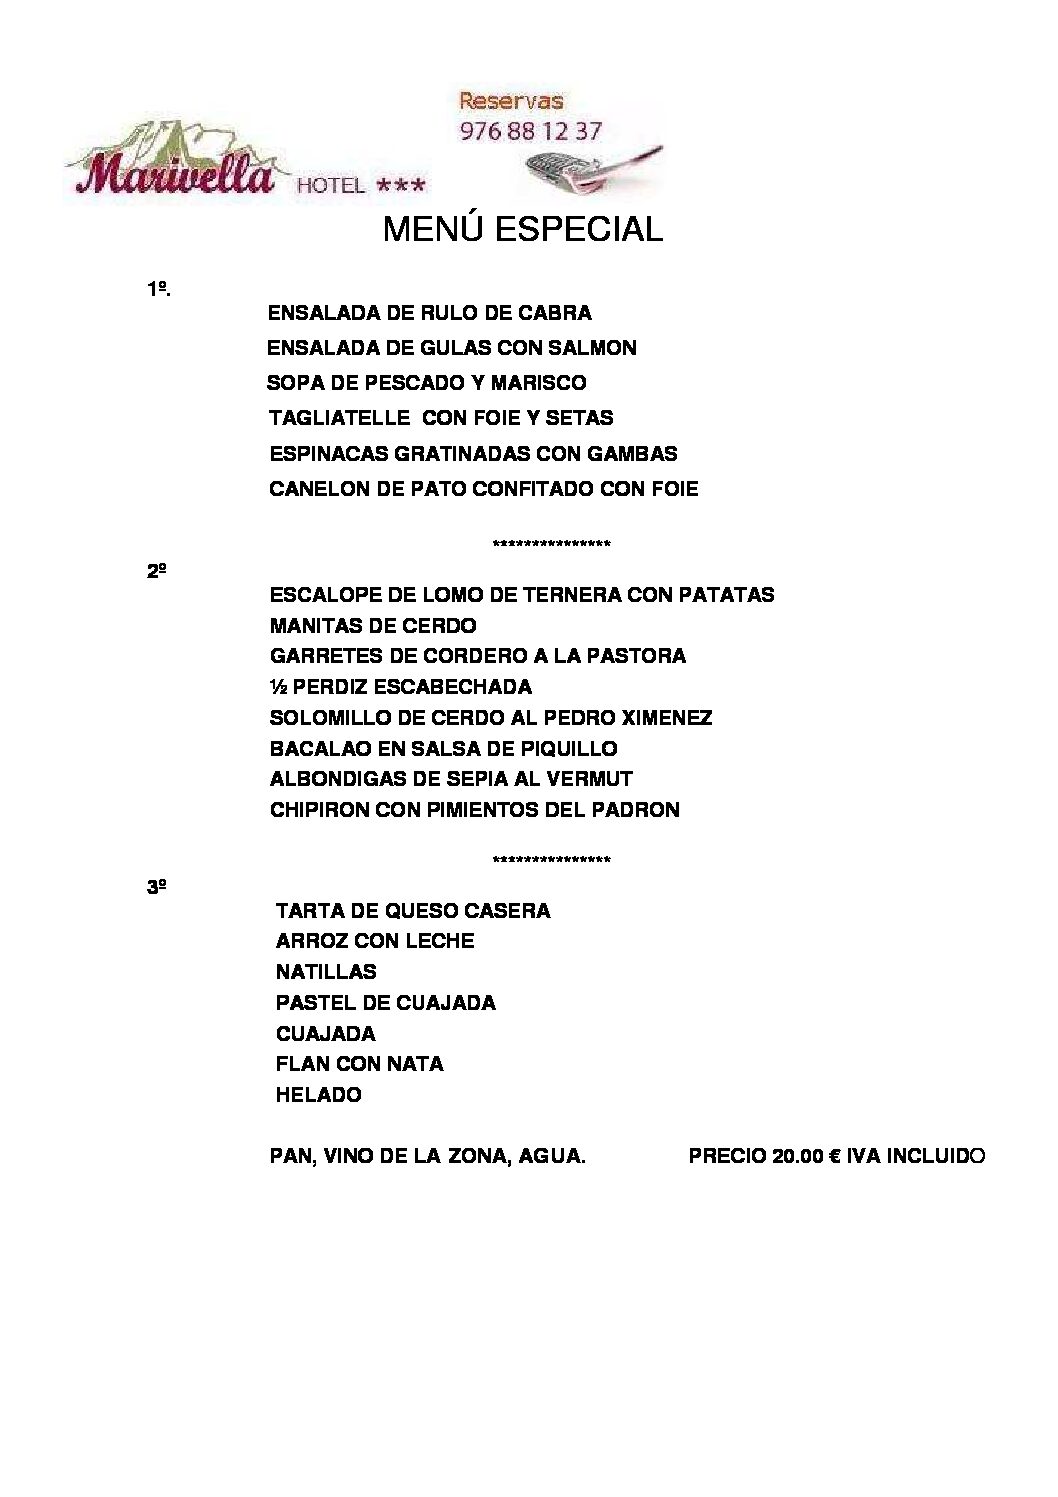 MENU-ESPECIAL-1-Y-6-ENERO-2019-pdf.jpg